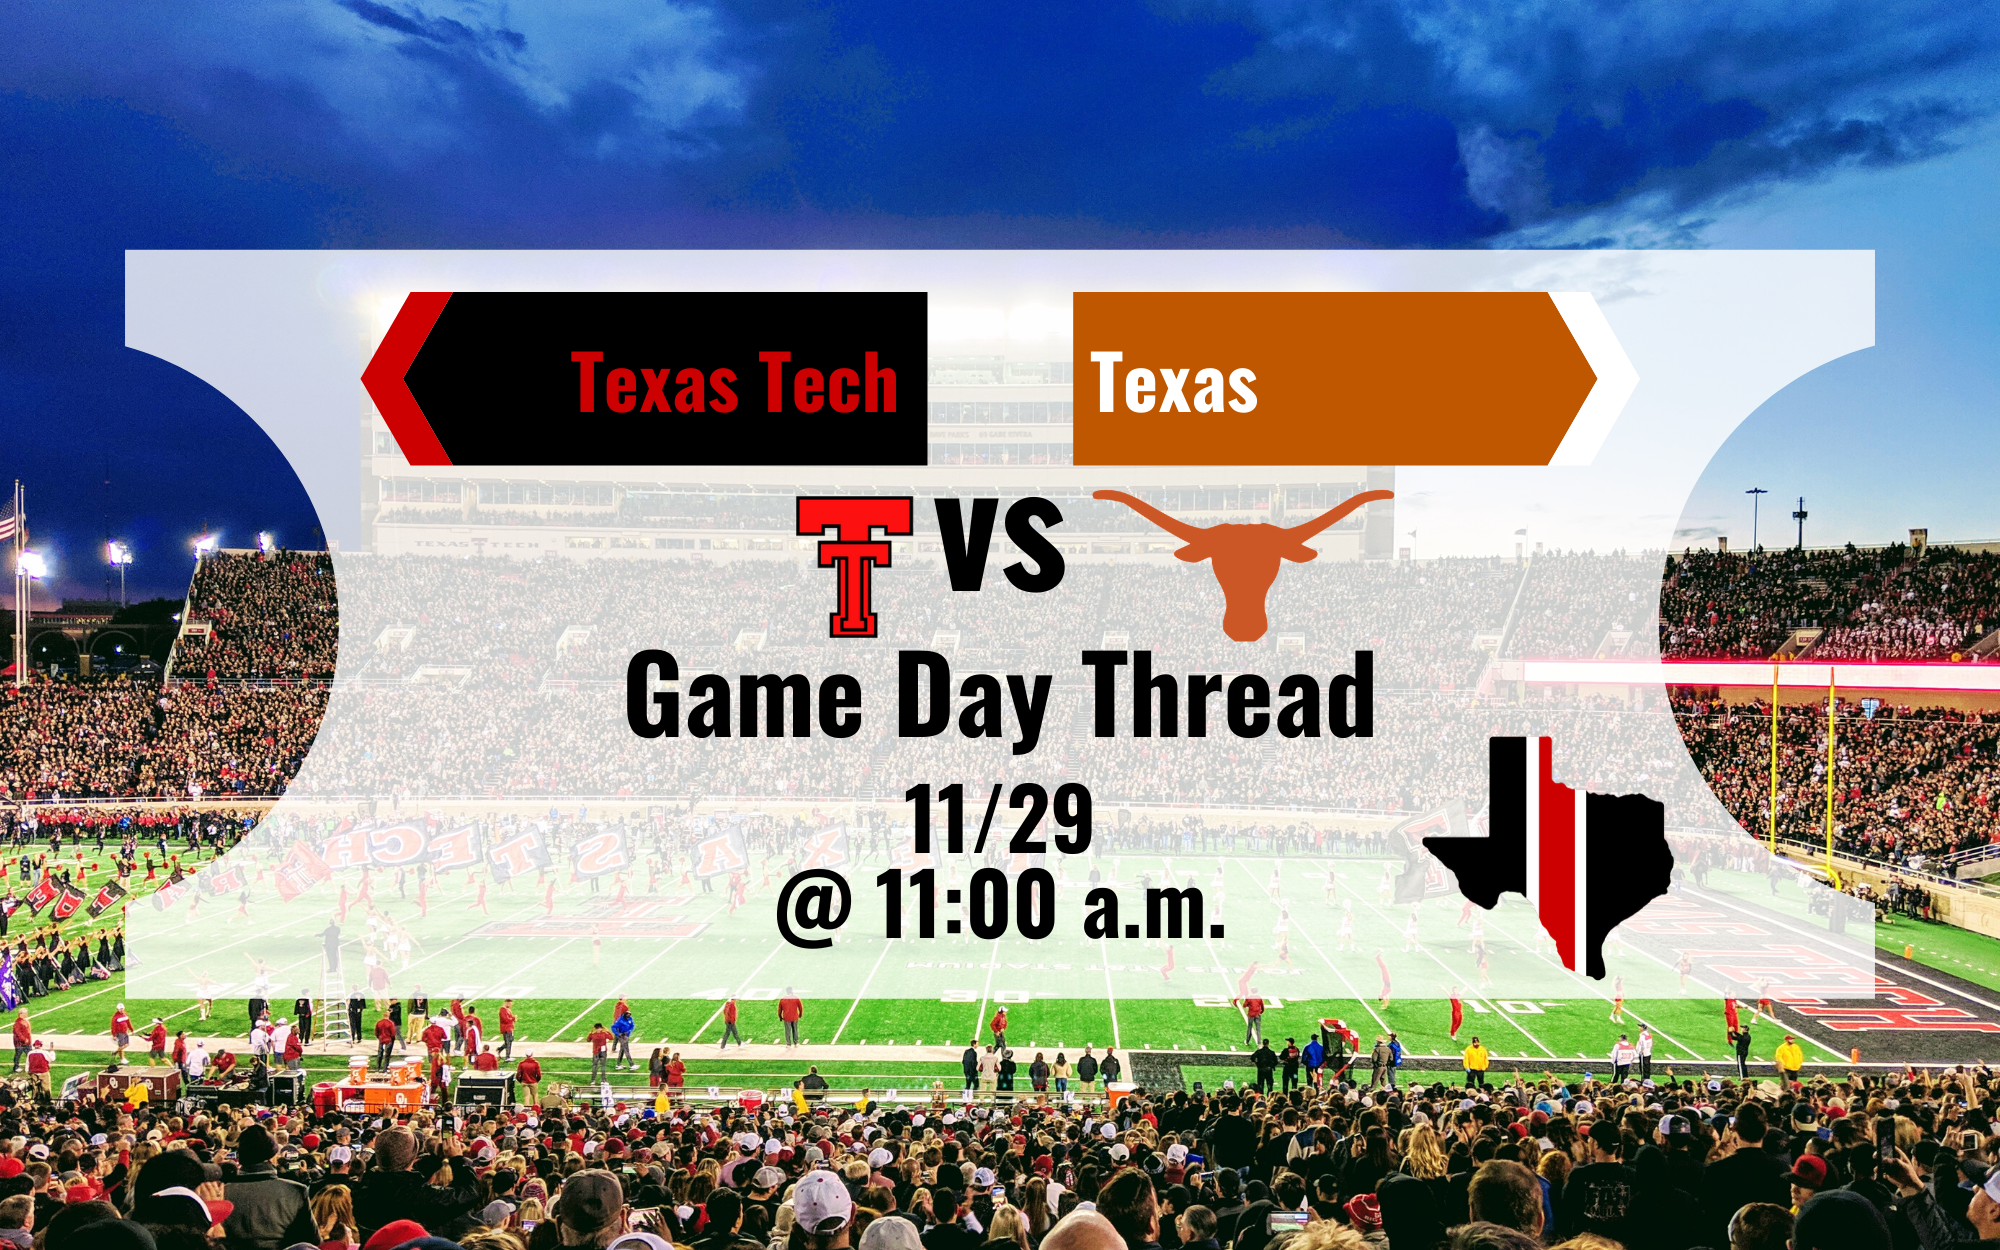 Game Day Thread 4: Texas Tech vs. Texas